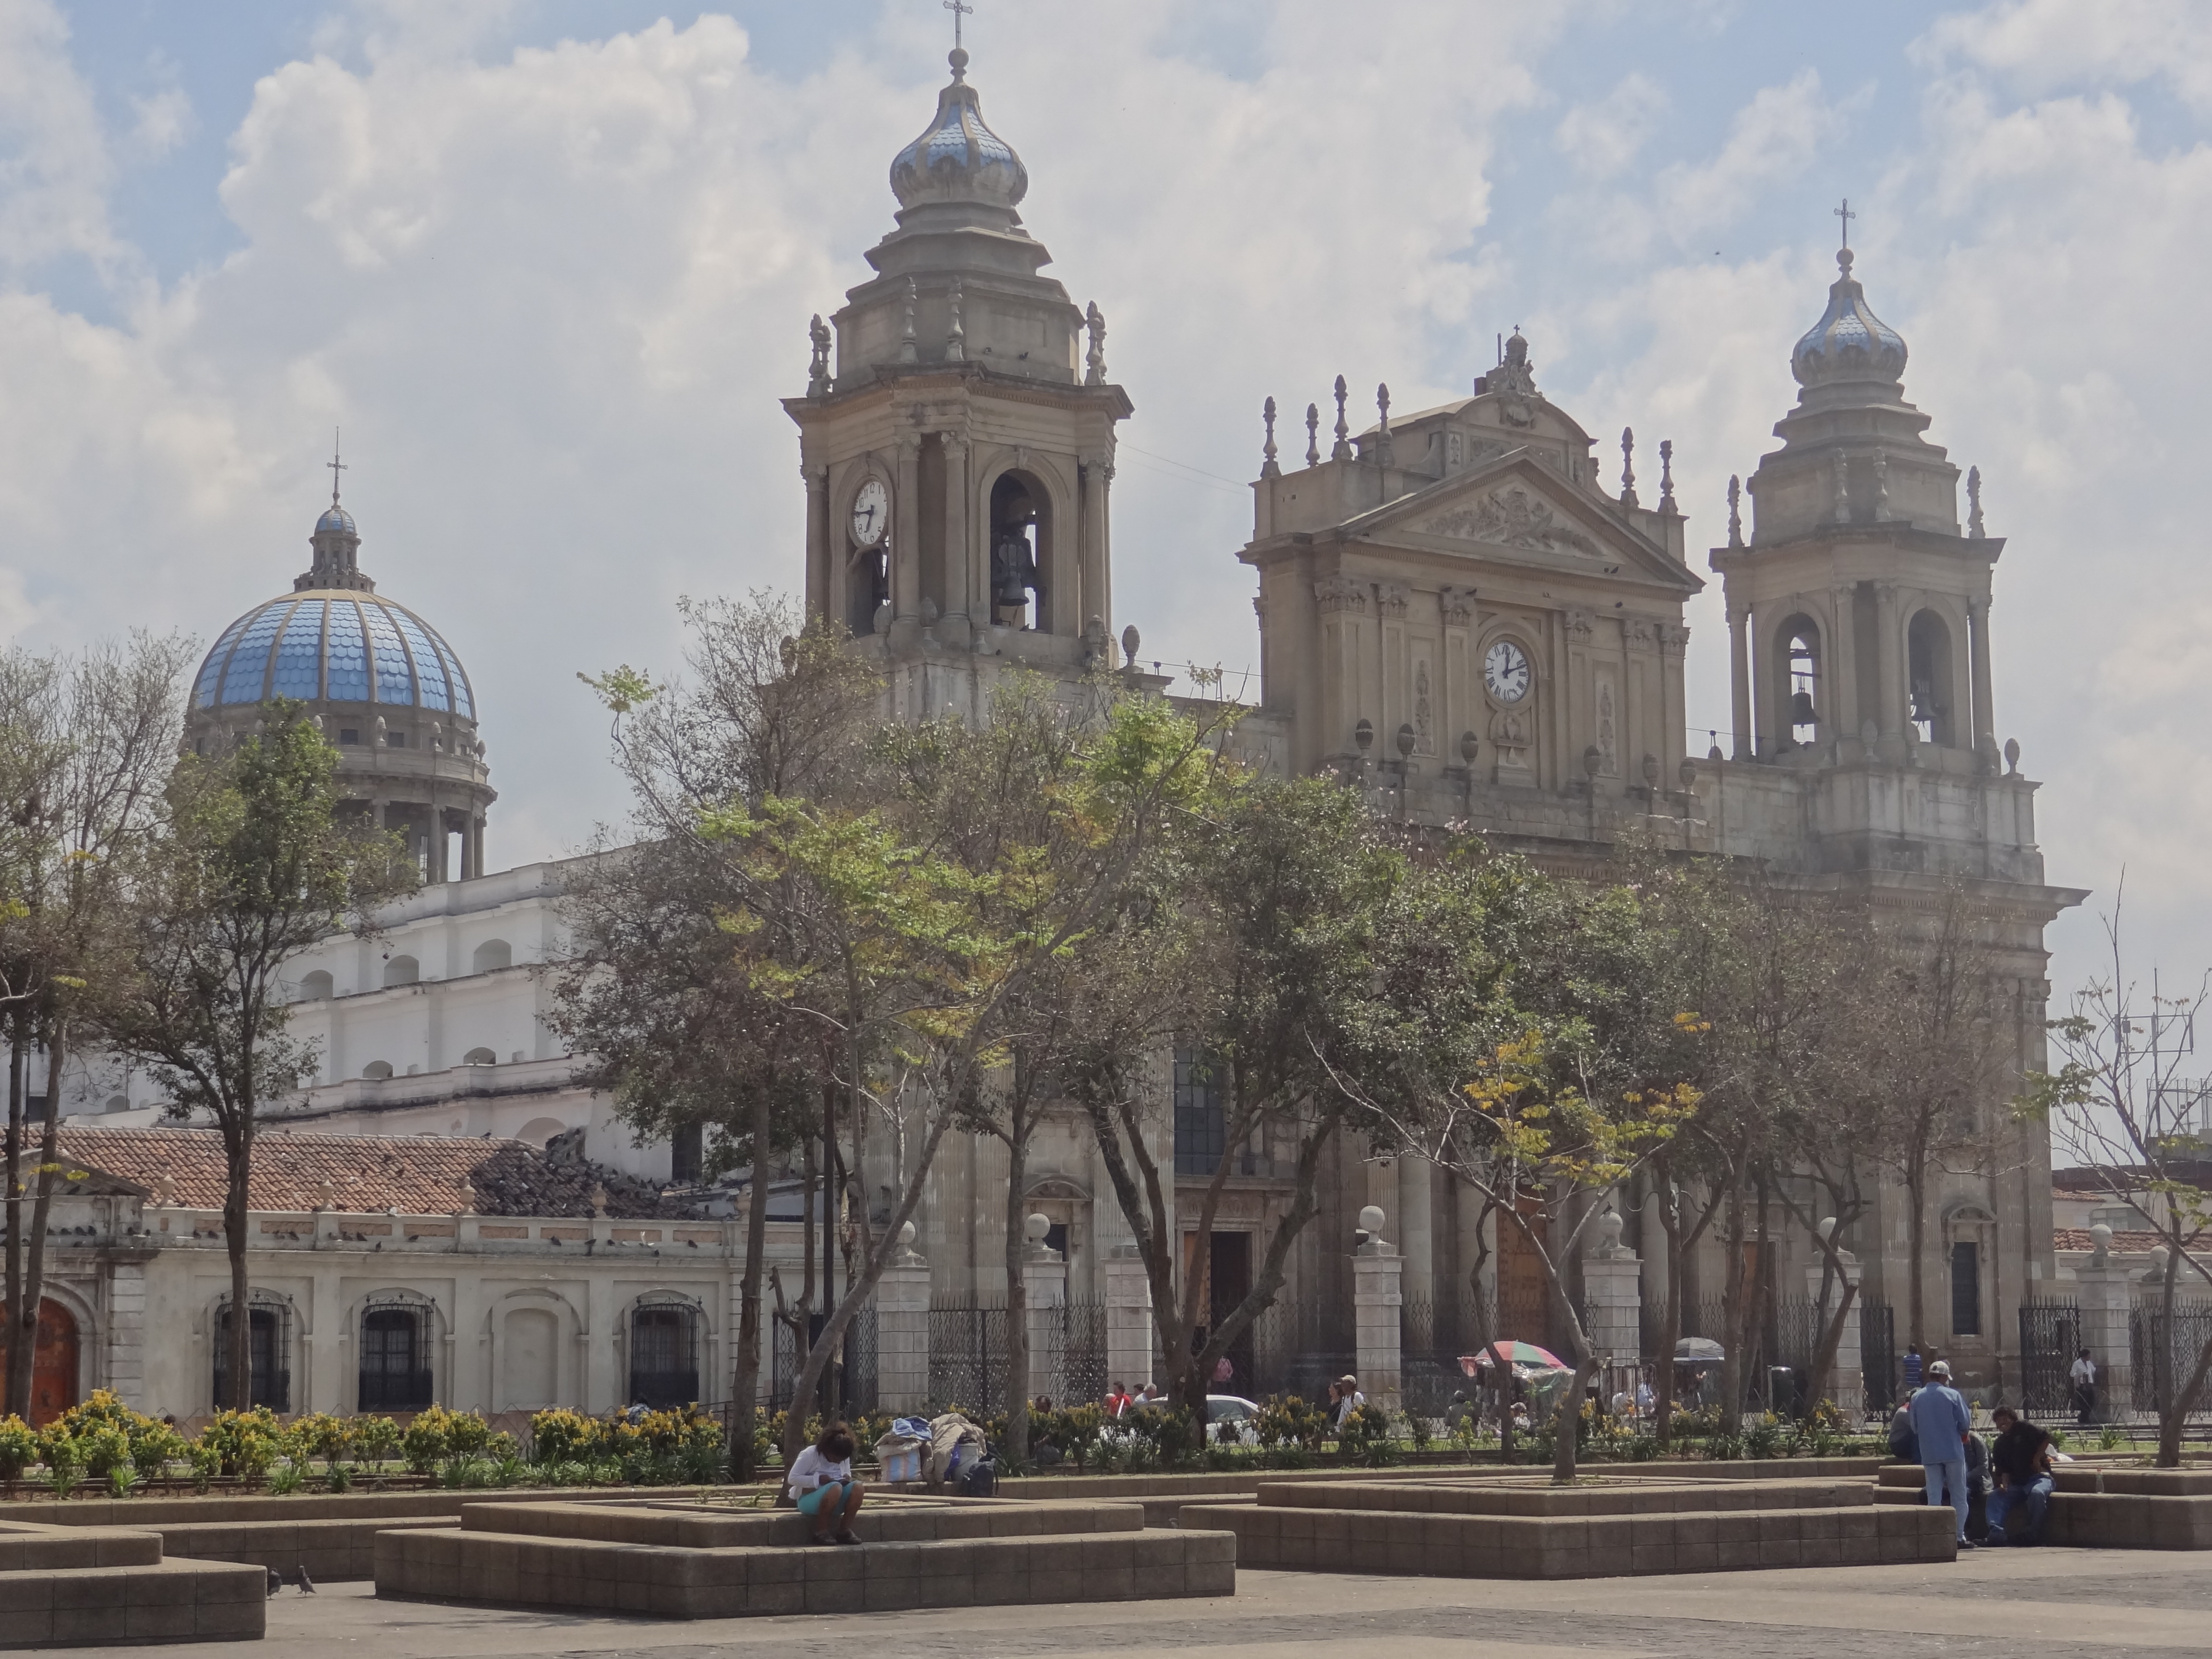 Cathédrale de Guatemala City photo blog voyage tour du monde travel https://yoytourdumonde.fr